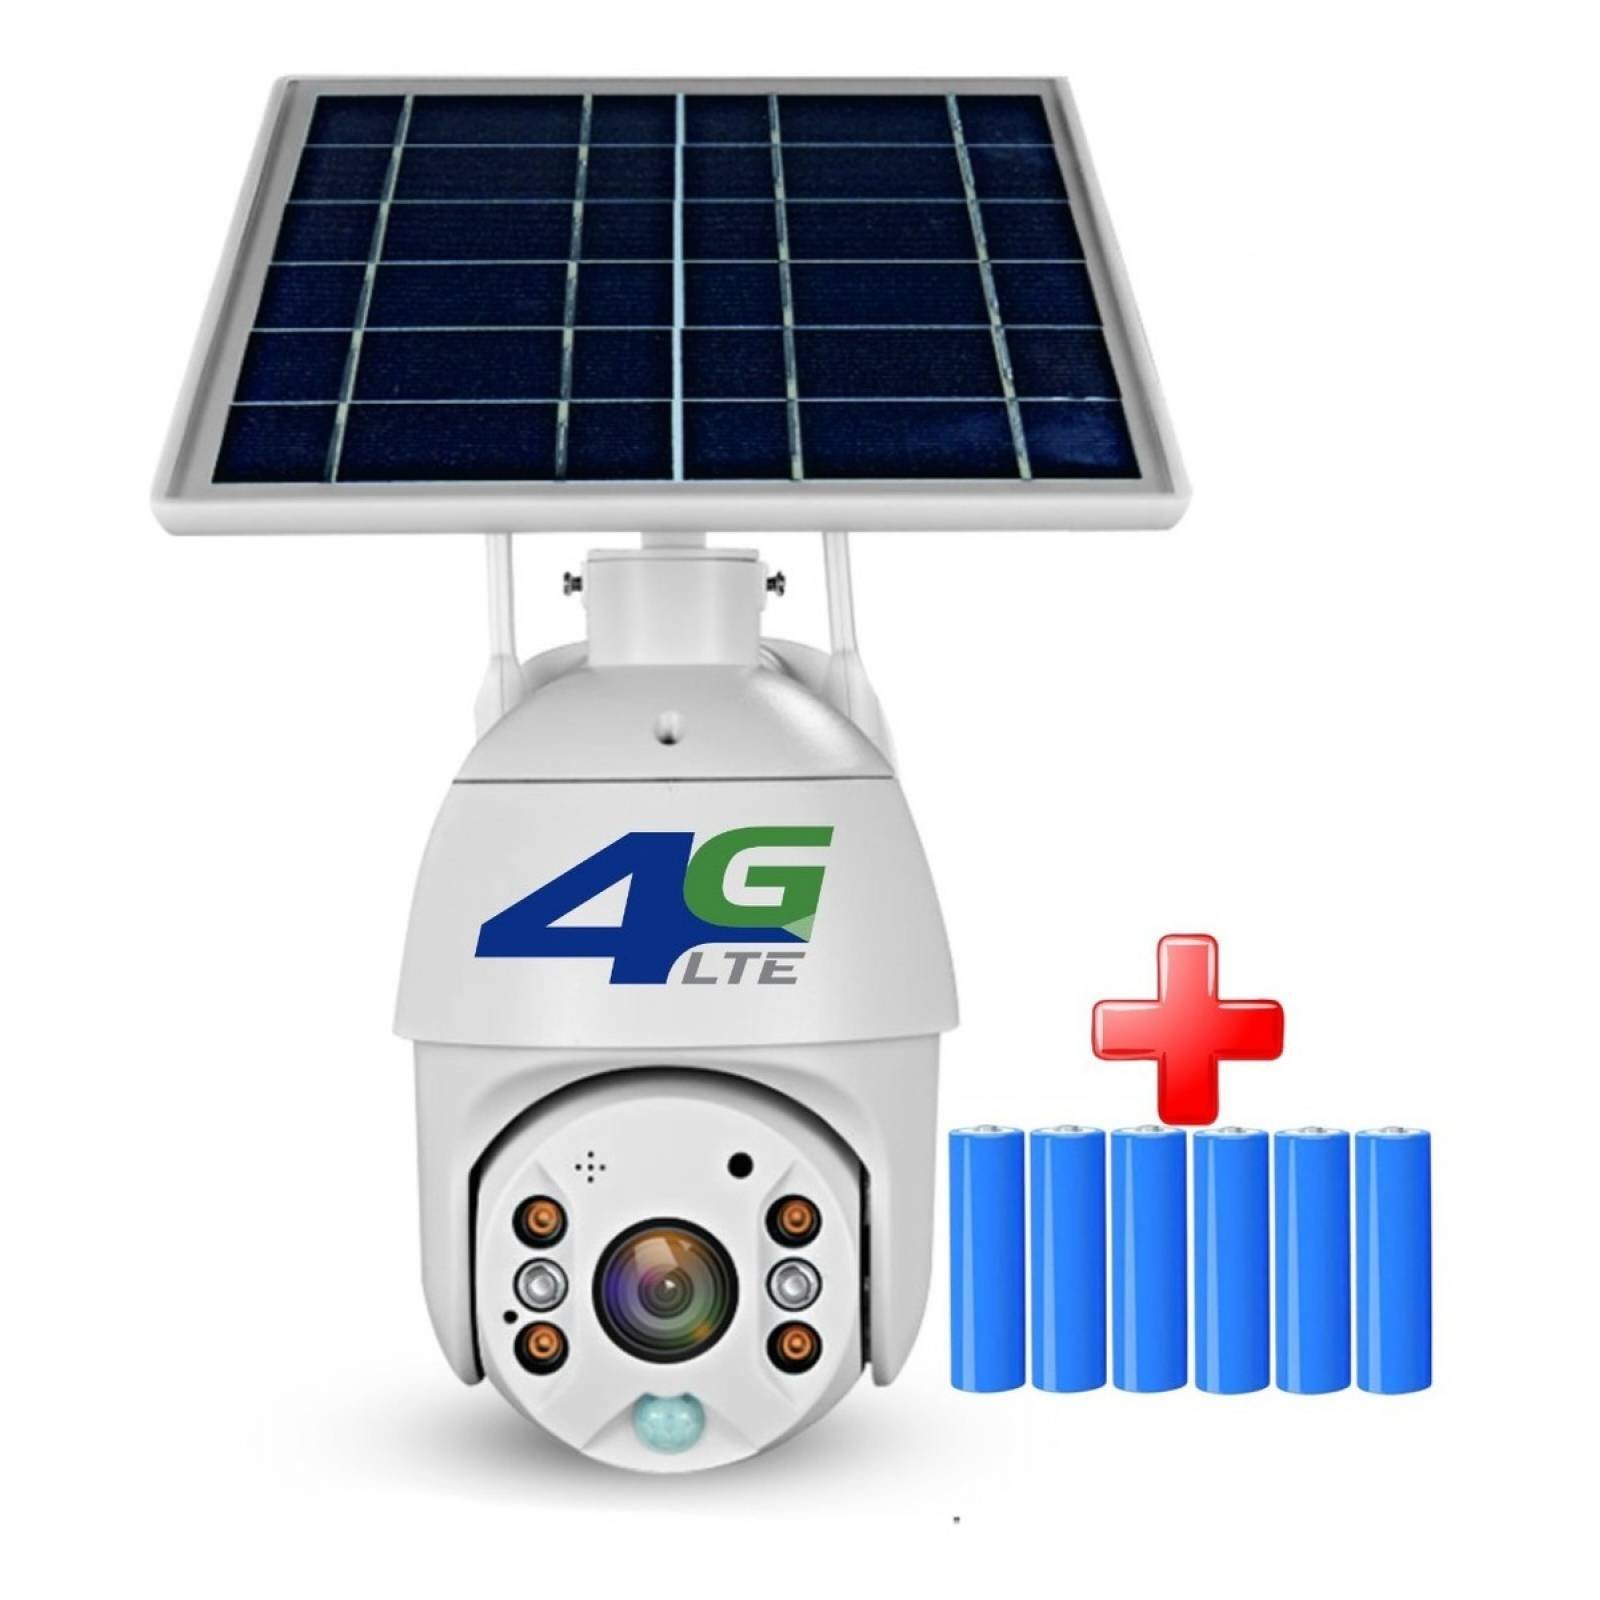 CAMARA SOLAR EDUP 4G EXTERIOR EH-1296 CON MOVIMIENTO - Ecologic Tech